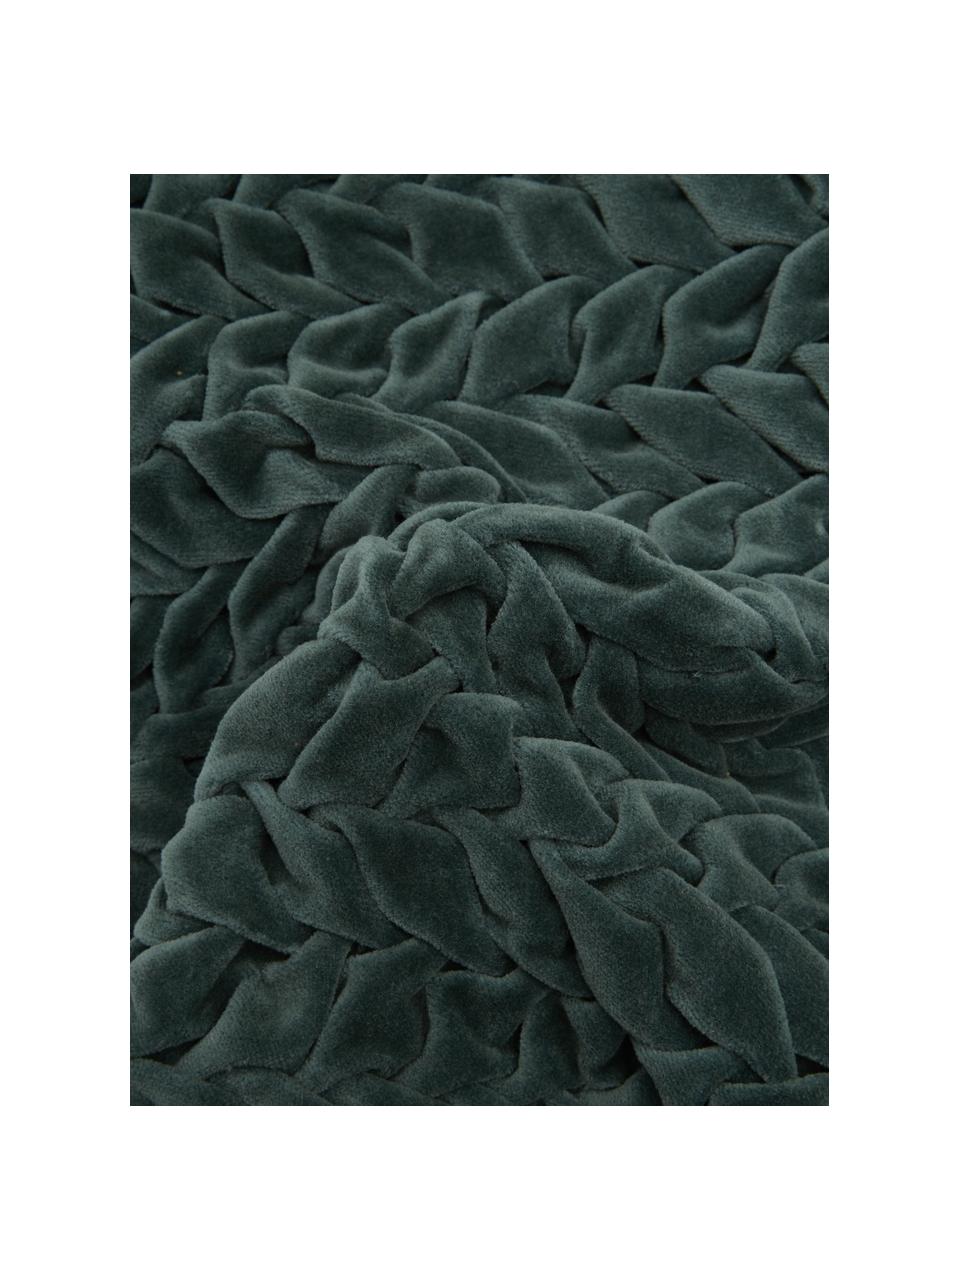 Cuscino in velluto blu-verde con superficie arruffata Smock, Rivestimento: 100% velluto di cotone, Blu-verde, Larg. 30 x Lung. 50 cm